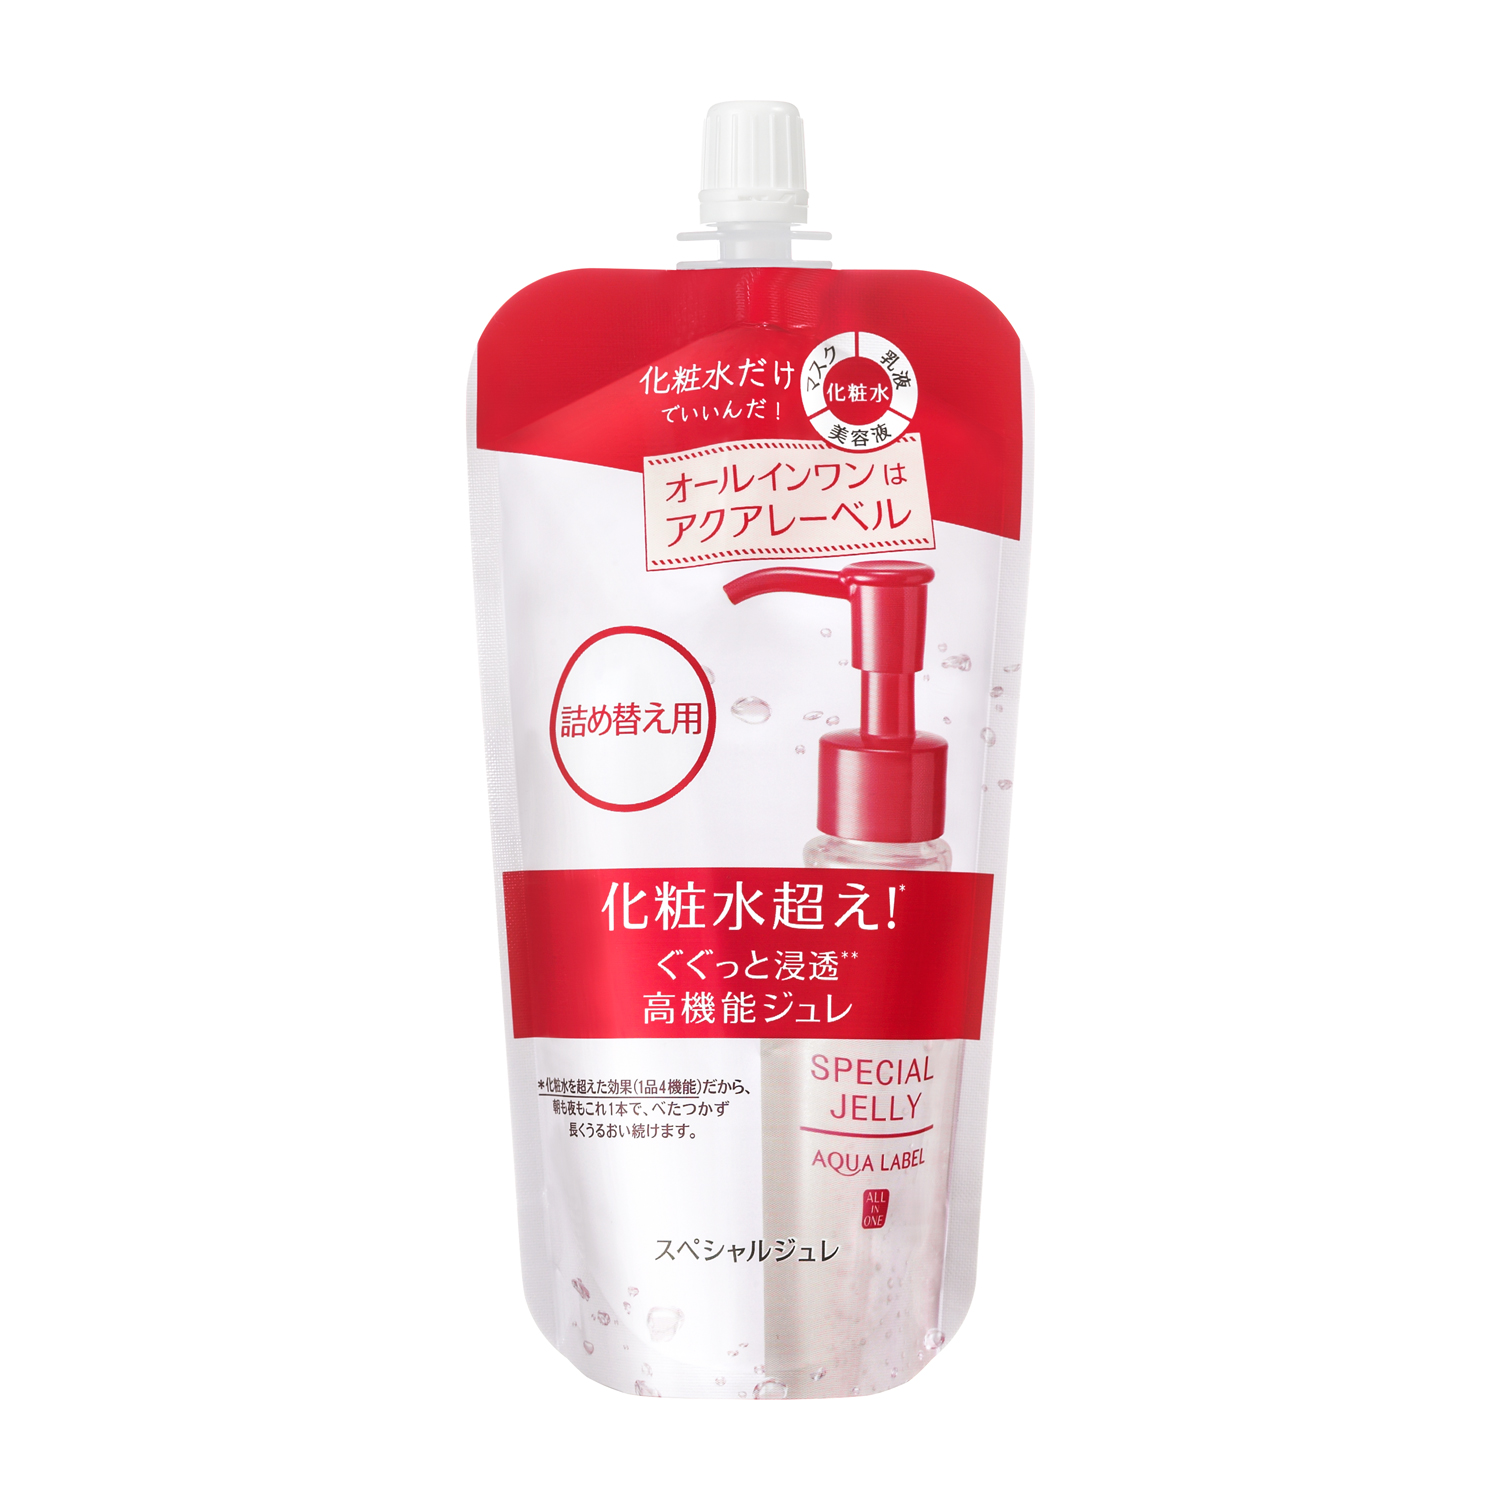 [Dạng túi] Huyết thanh Shiseido Aqualabel Special Jelly - Chống lão hóa (140ml) - Nhật bản